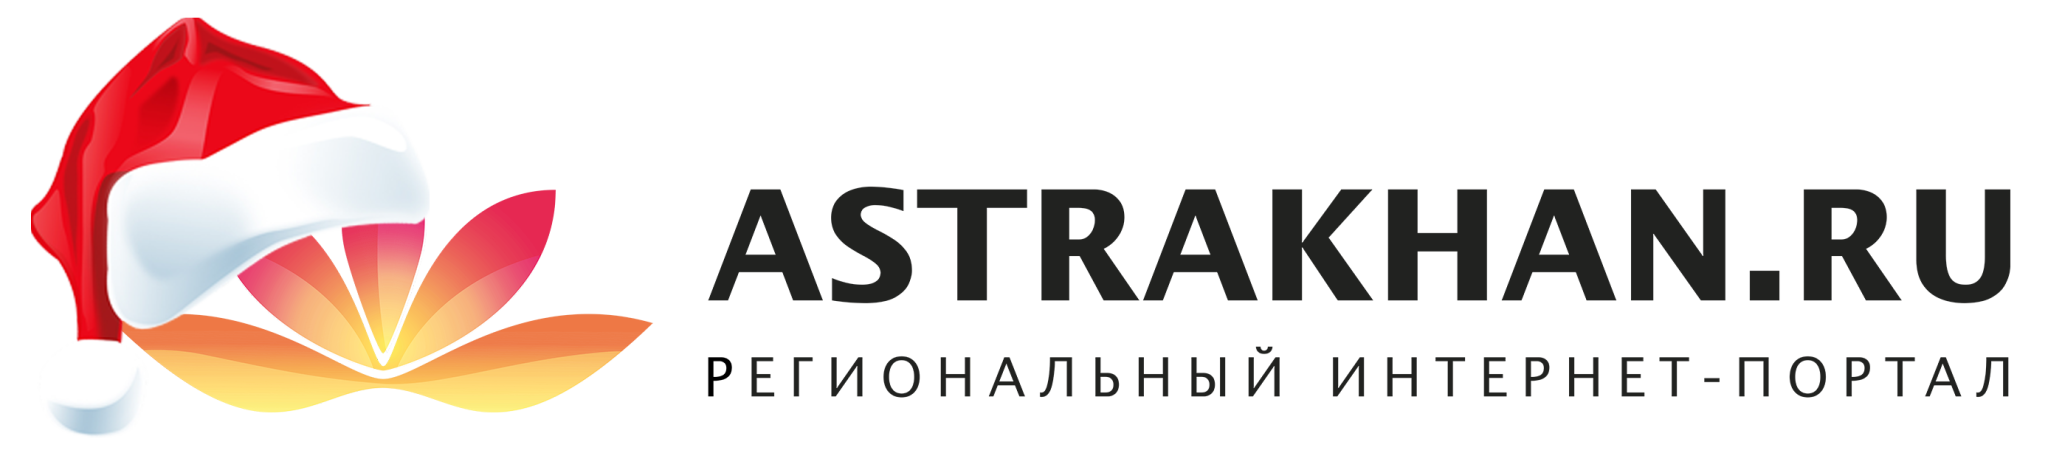 Региональный банк Астрахани. Астрахань ру. Астрахань ру логотип. Портал Астрахань.